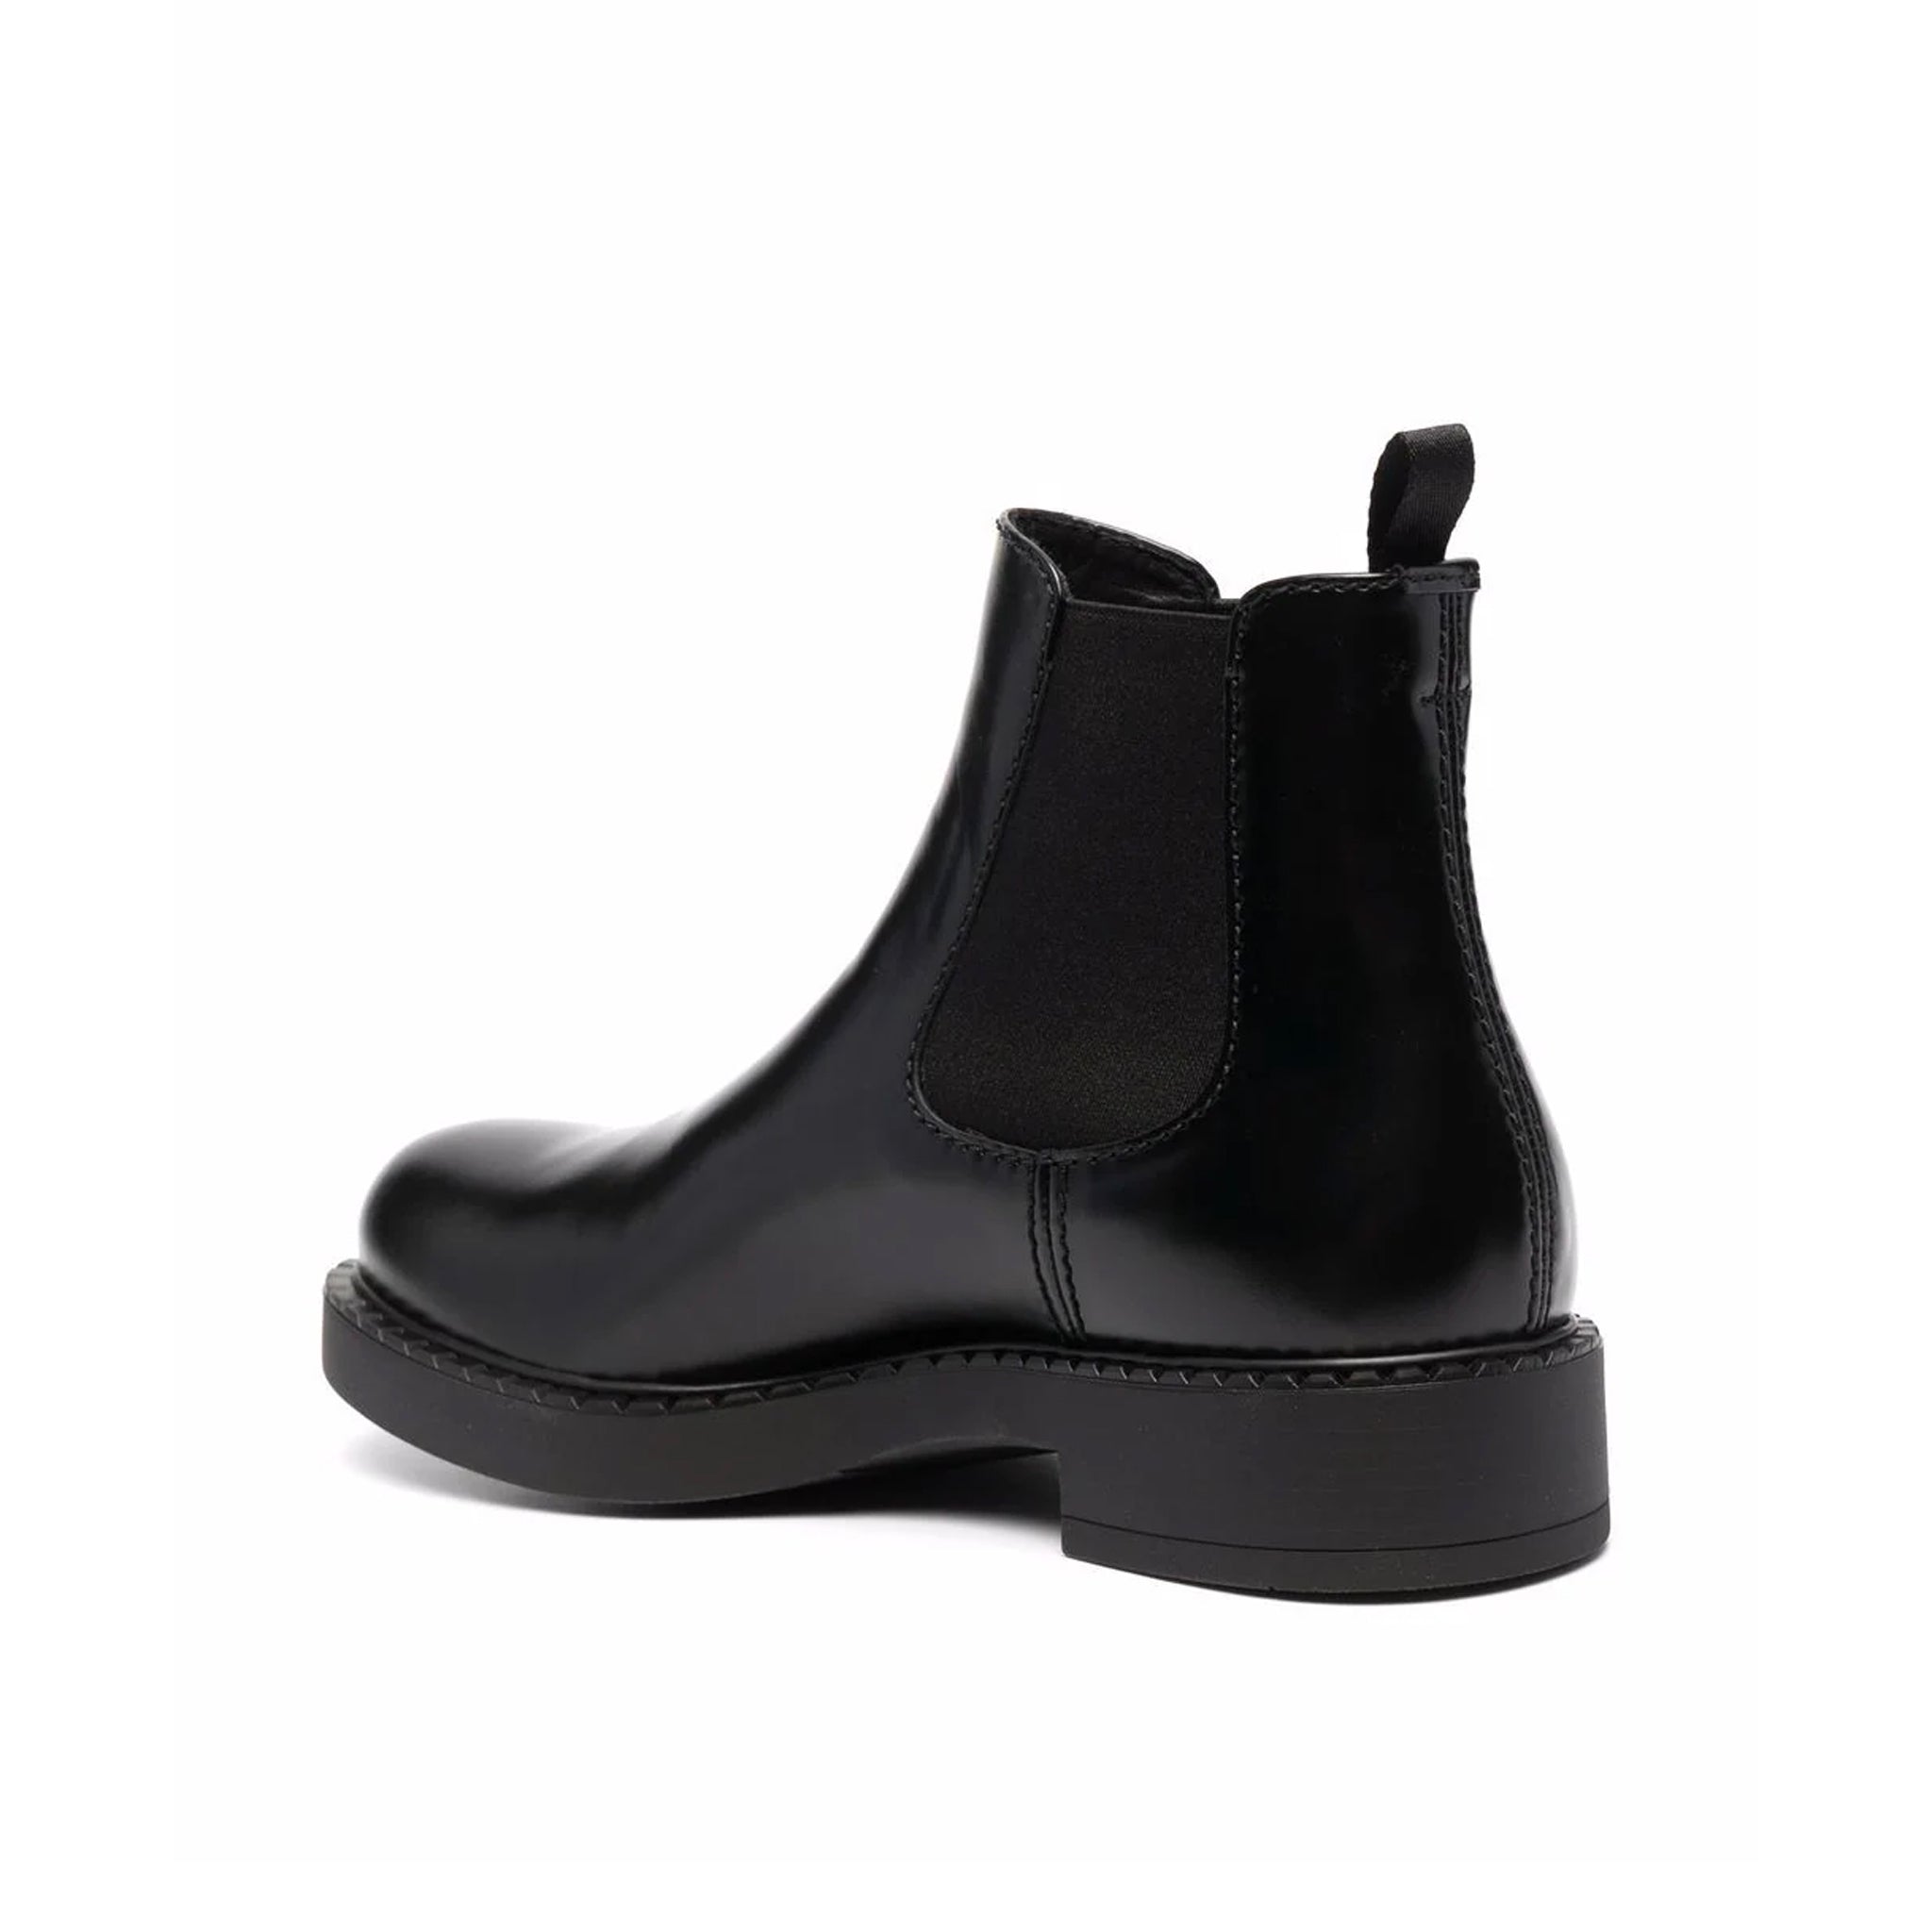 PRADA-Outlet-Sale-Prada Chelsea Boots-MEN SHOES-BLACK-39.5-ARCHIVIST